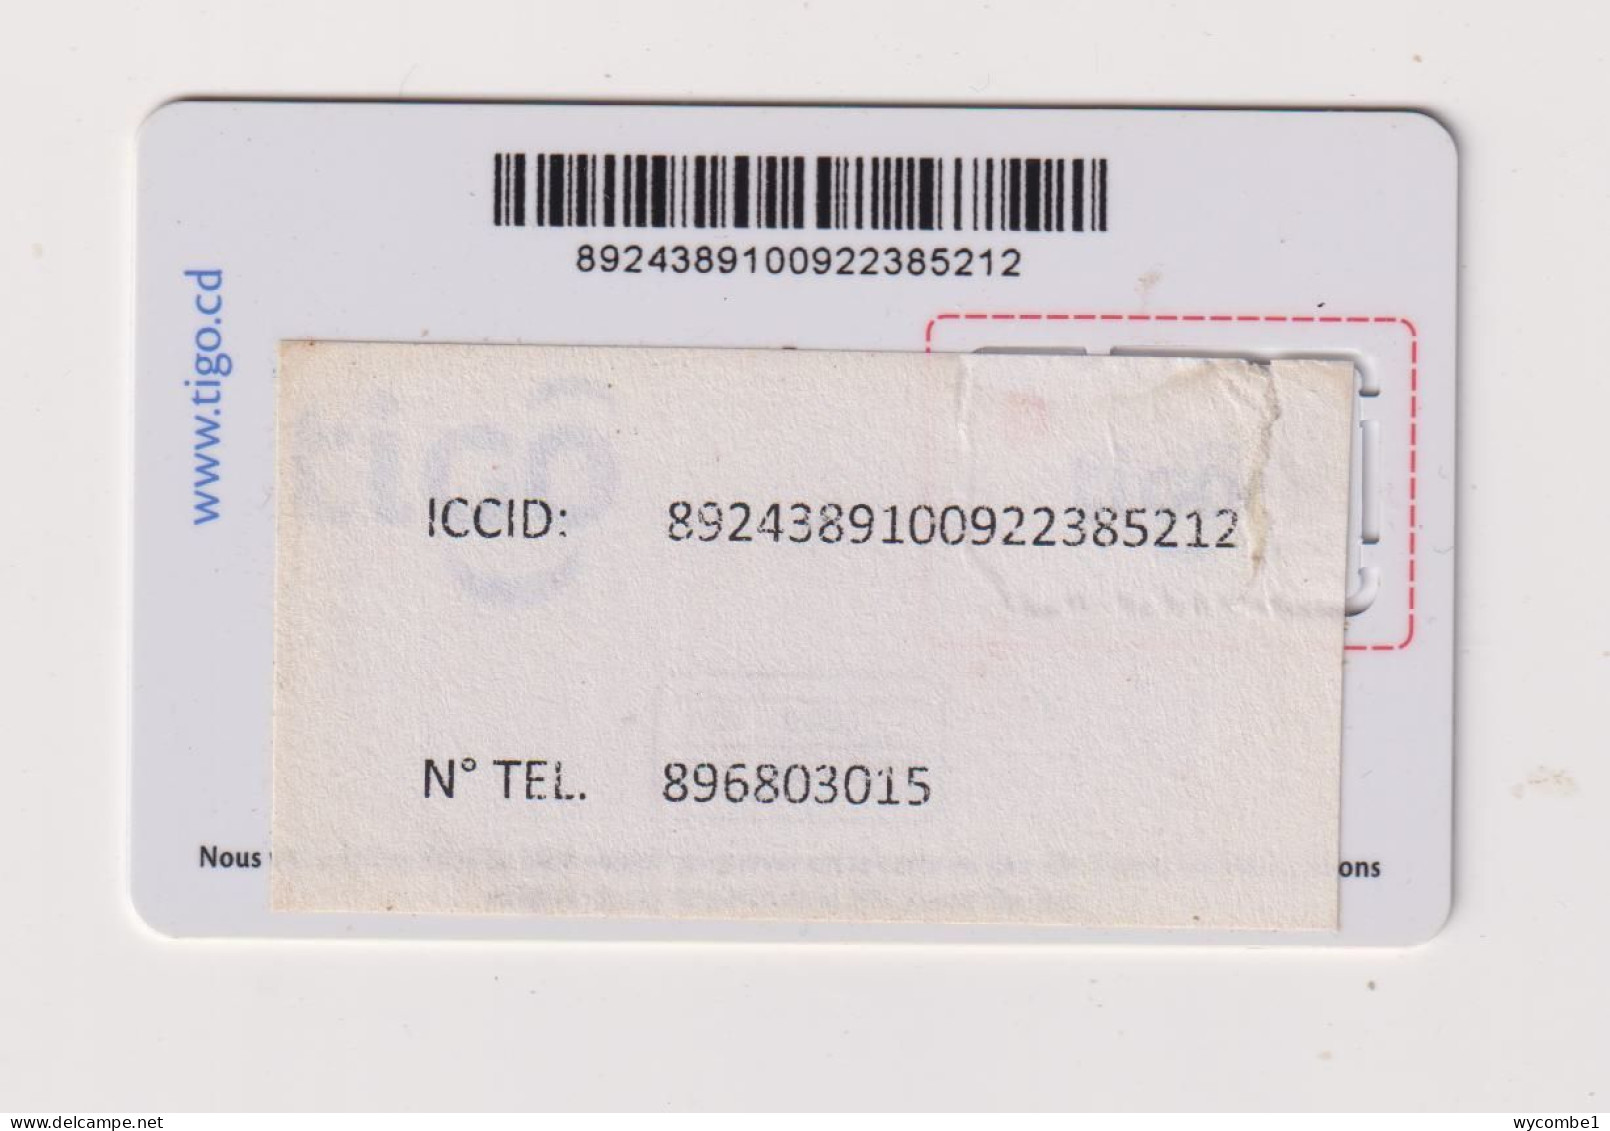 CONGO DR (Kinshasa) - Tigo Unused Chip SIM Phonecard - Congo